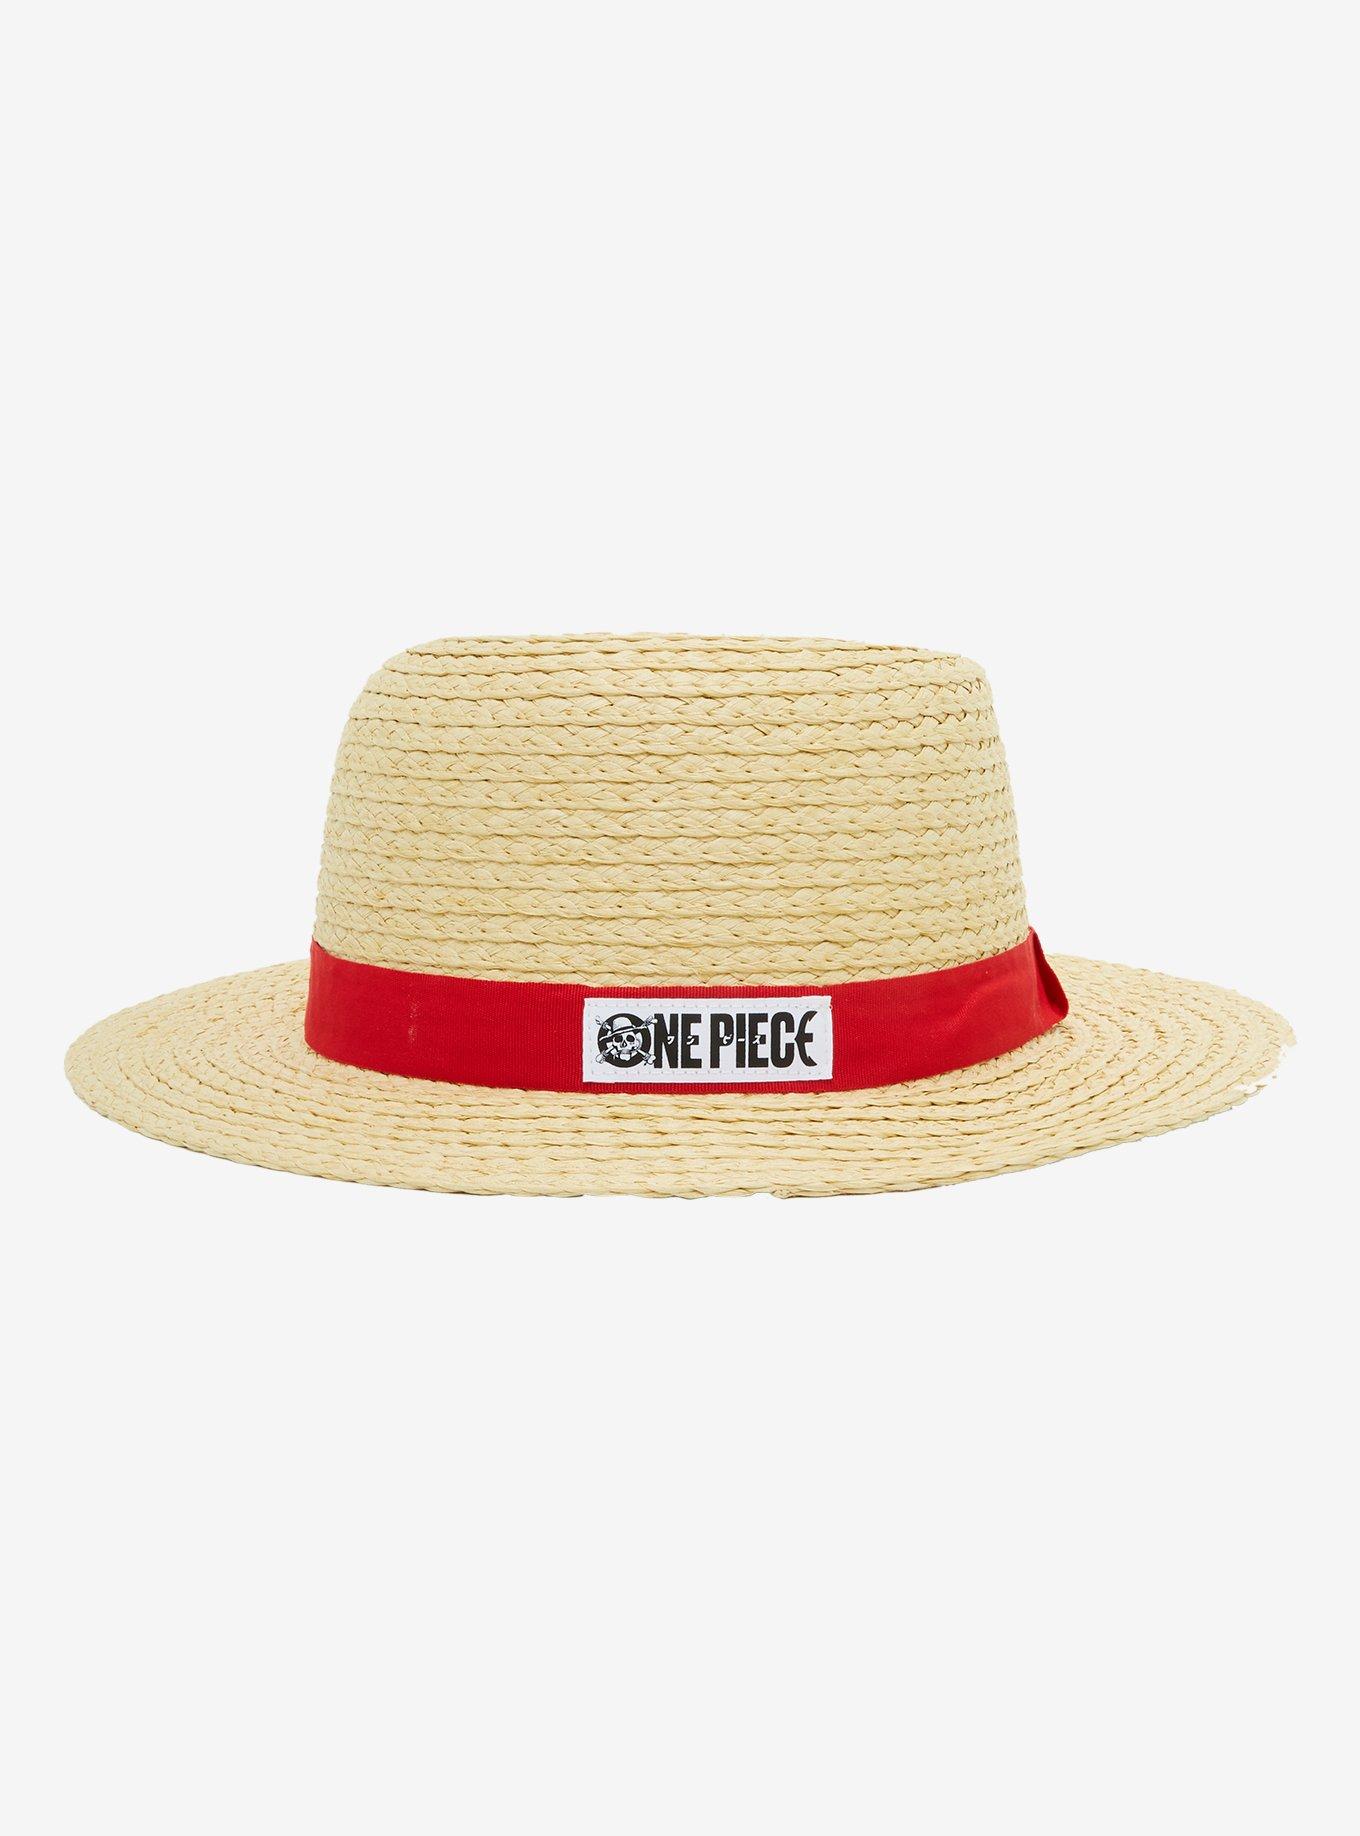 Custom Straw Hat, Luffy Straw Hat, Straw Bucket Hat, Wide Brim Hat, Cowboy Straw Hat, Cowgirl Hat, Captain Hat, Beach Hat, Sun Hat